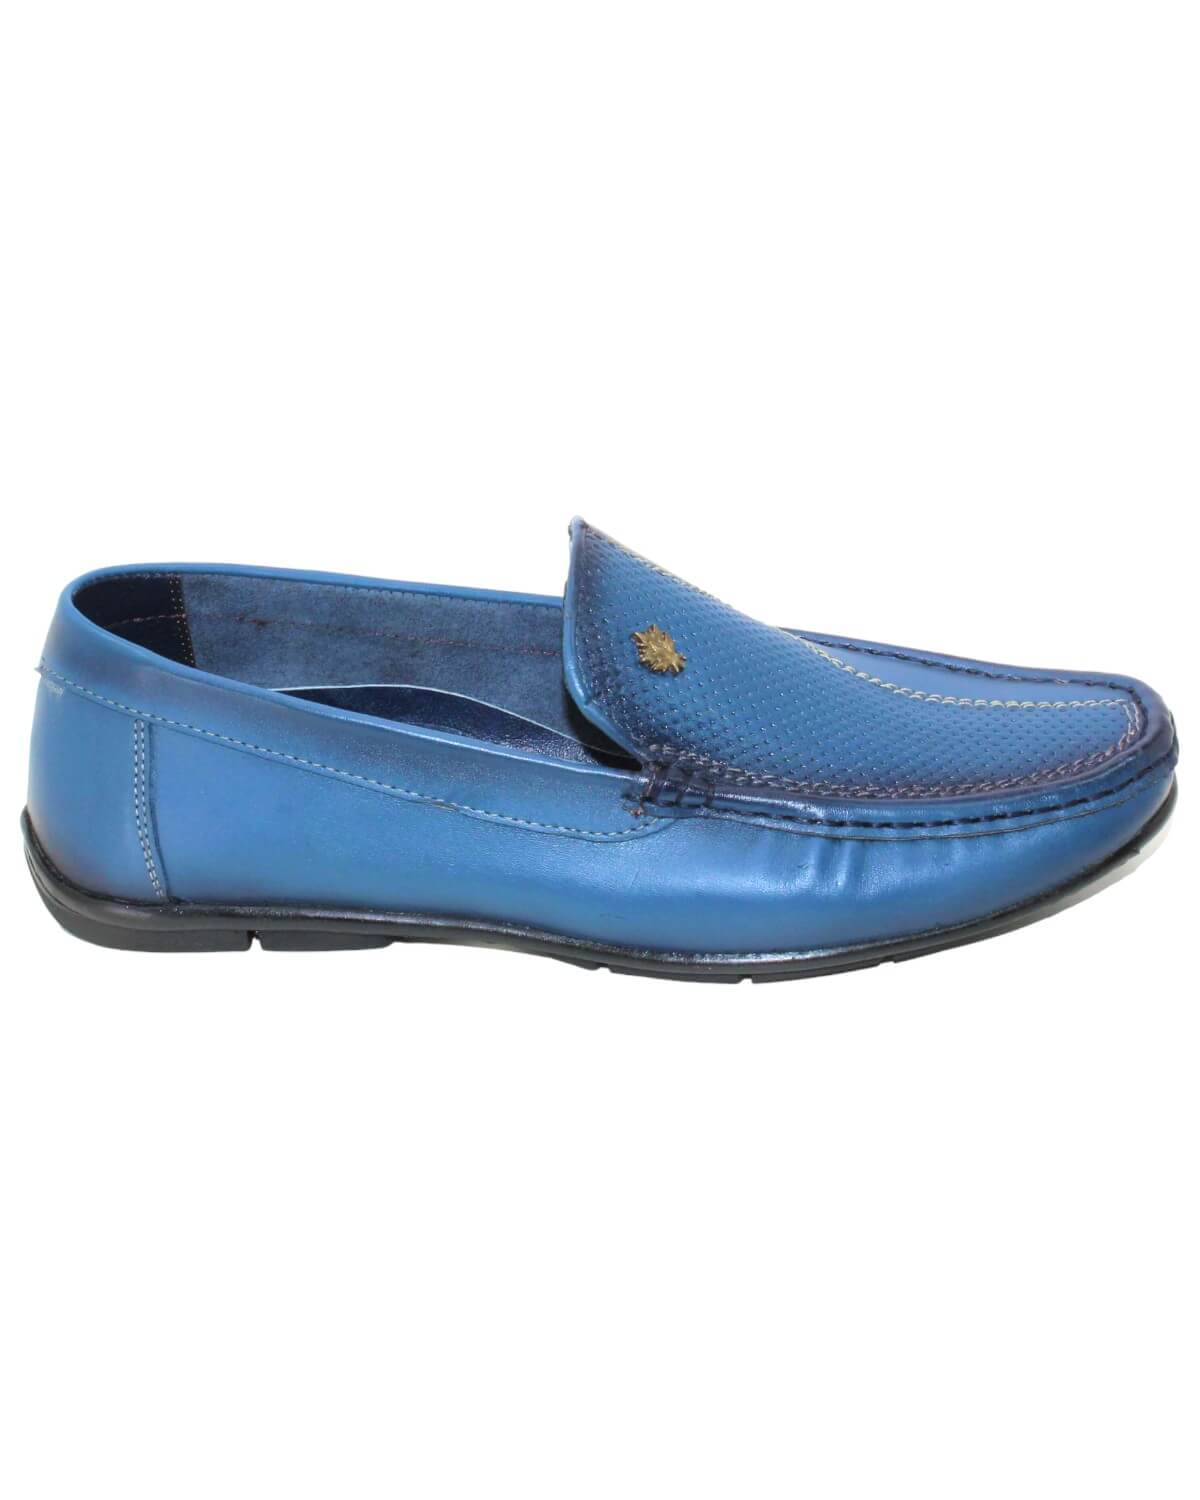 حذاء جلد رجالي مريح - أزرق - صورة جانبية